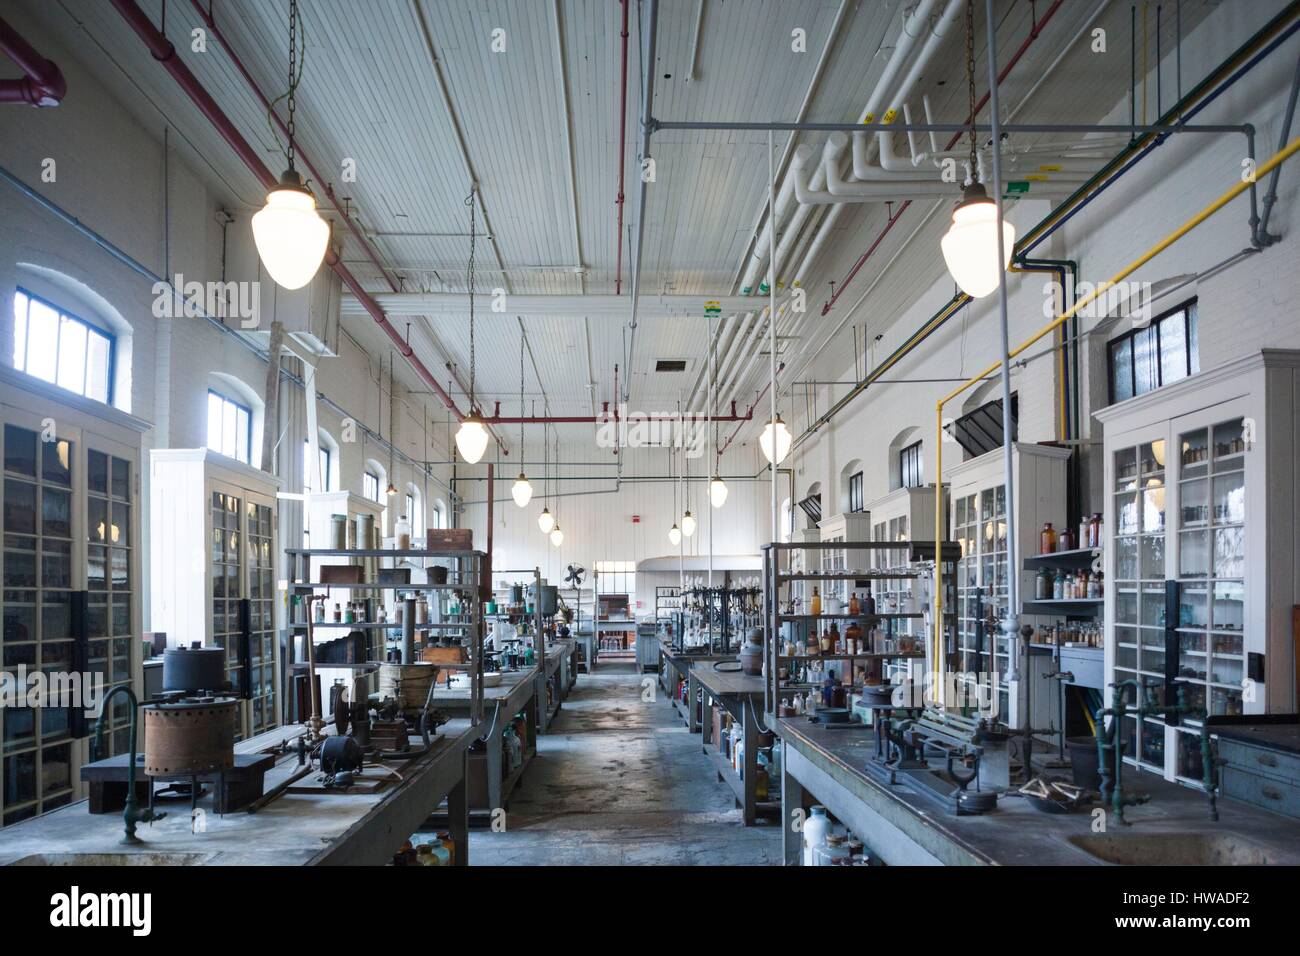 Estados Unidos, Nueva Jersey, West Orange, Thomas Edison National Historical Park, interior, laboratorio químico Foto de stock